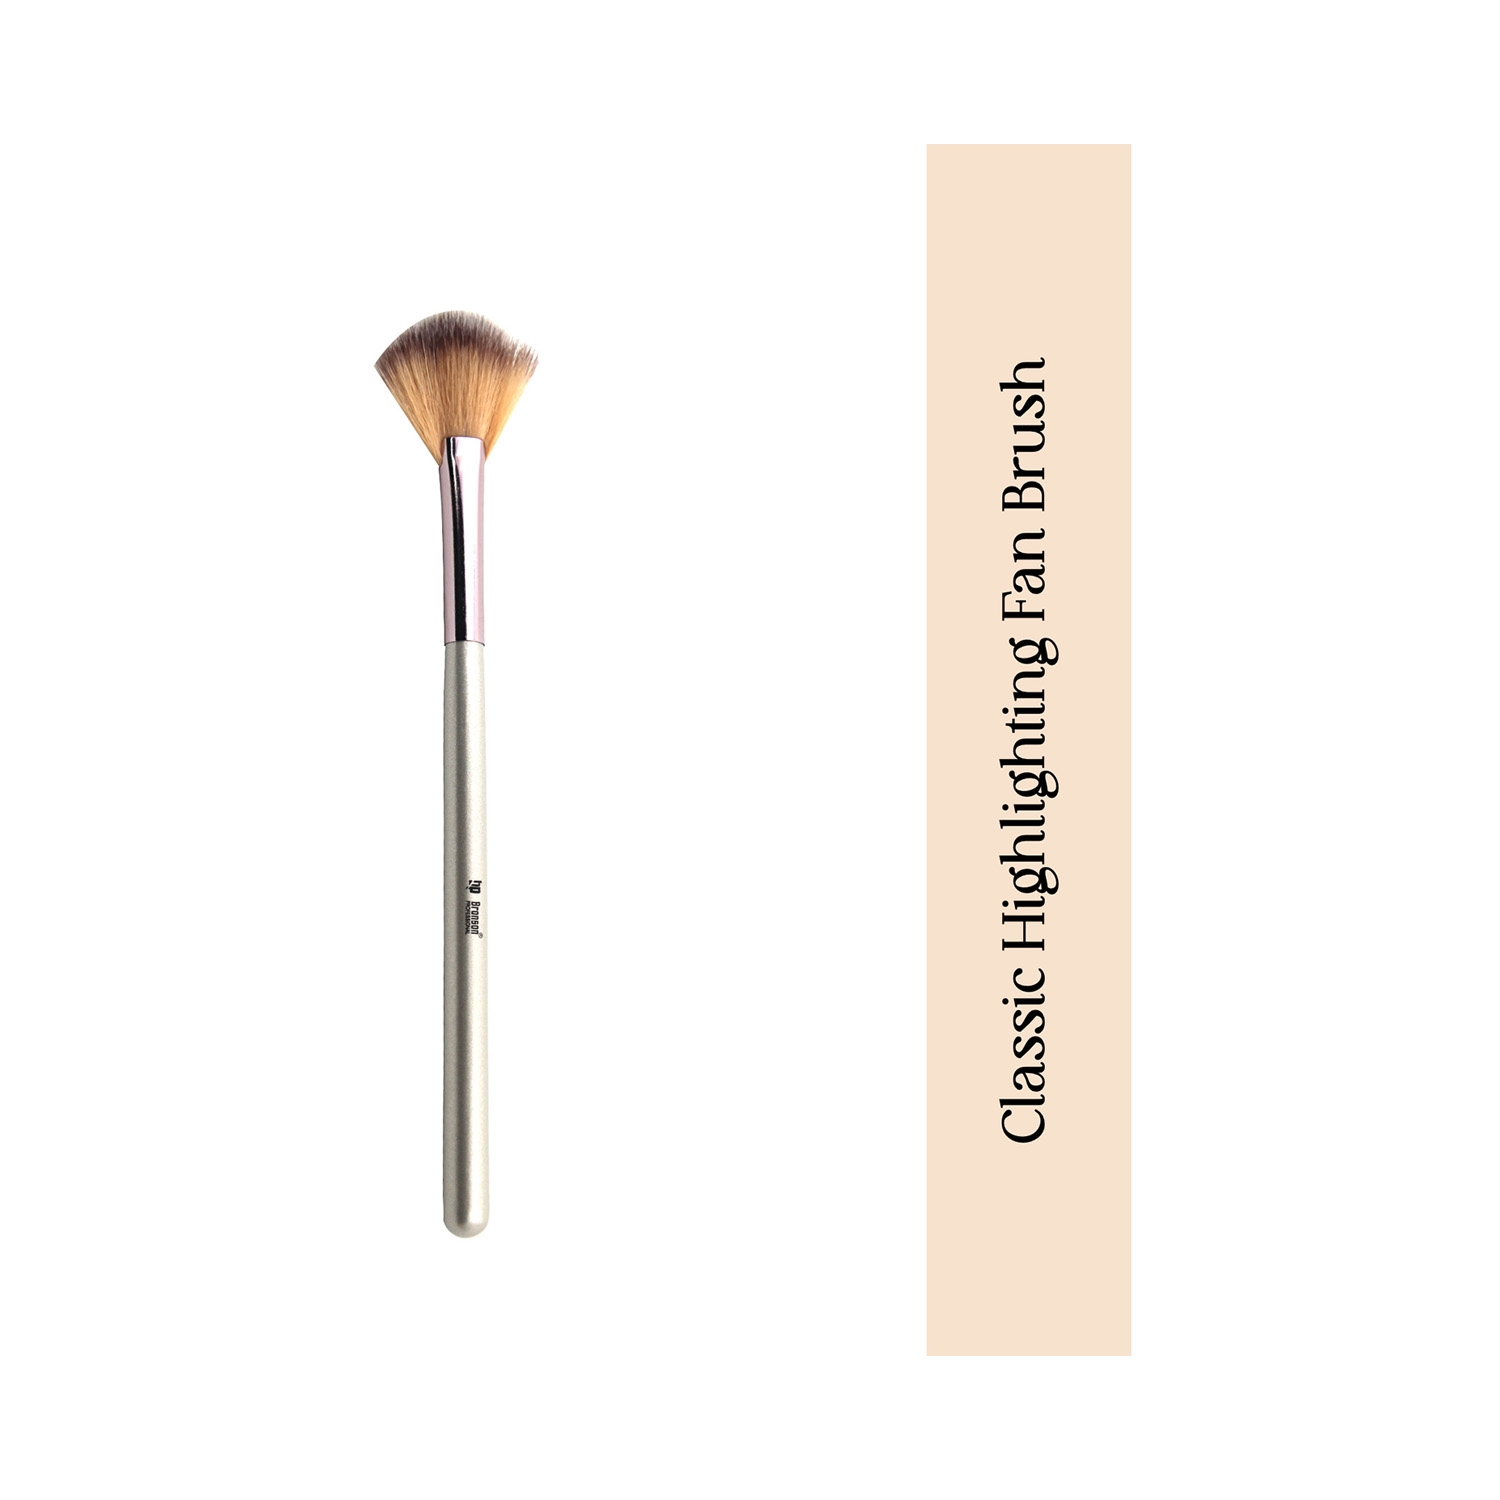 Bronson Professional | Bronson Professional Classic Highlighting Fan Makeup Brush - Silver, Pink